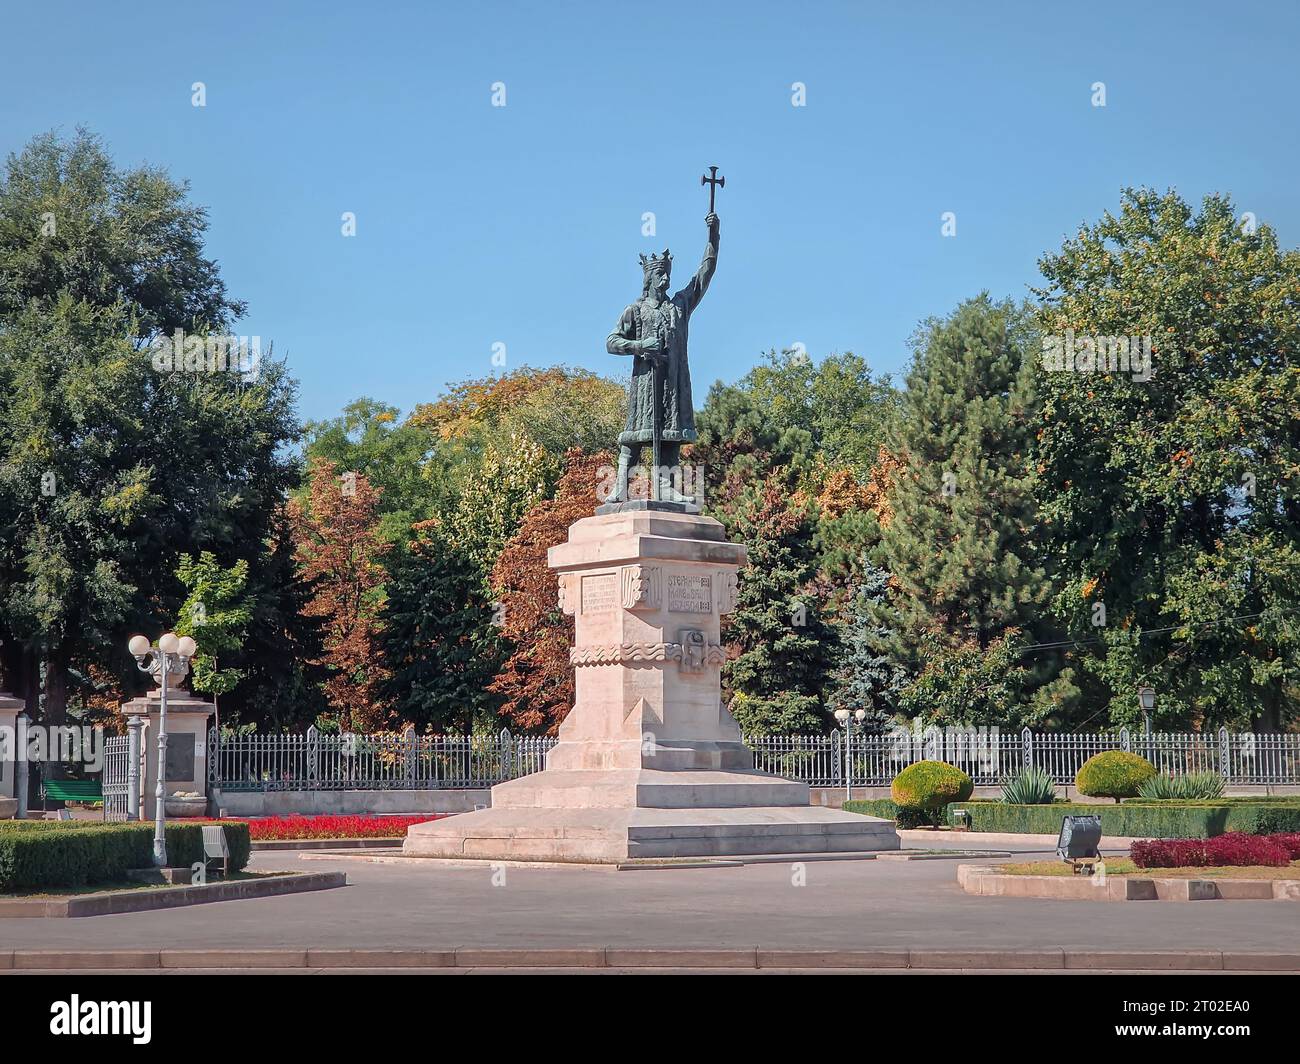 Stephen le Grand monument en face du parc central dans une journée ensoleillée d'automne, ville de Chisinau, Moldavie Banque D'Images